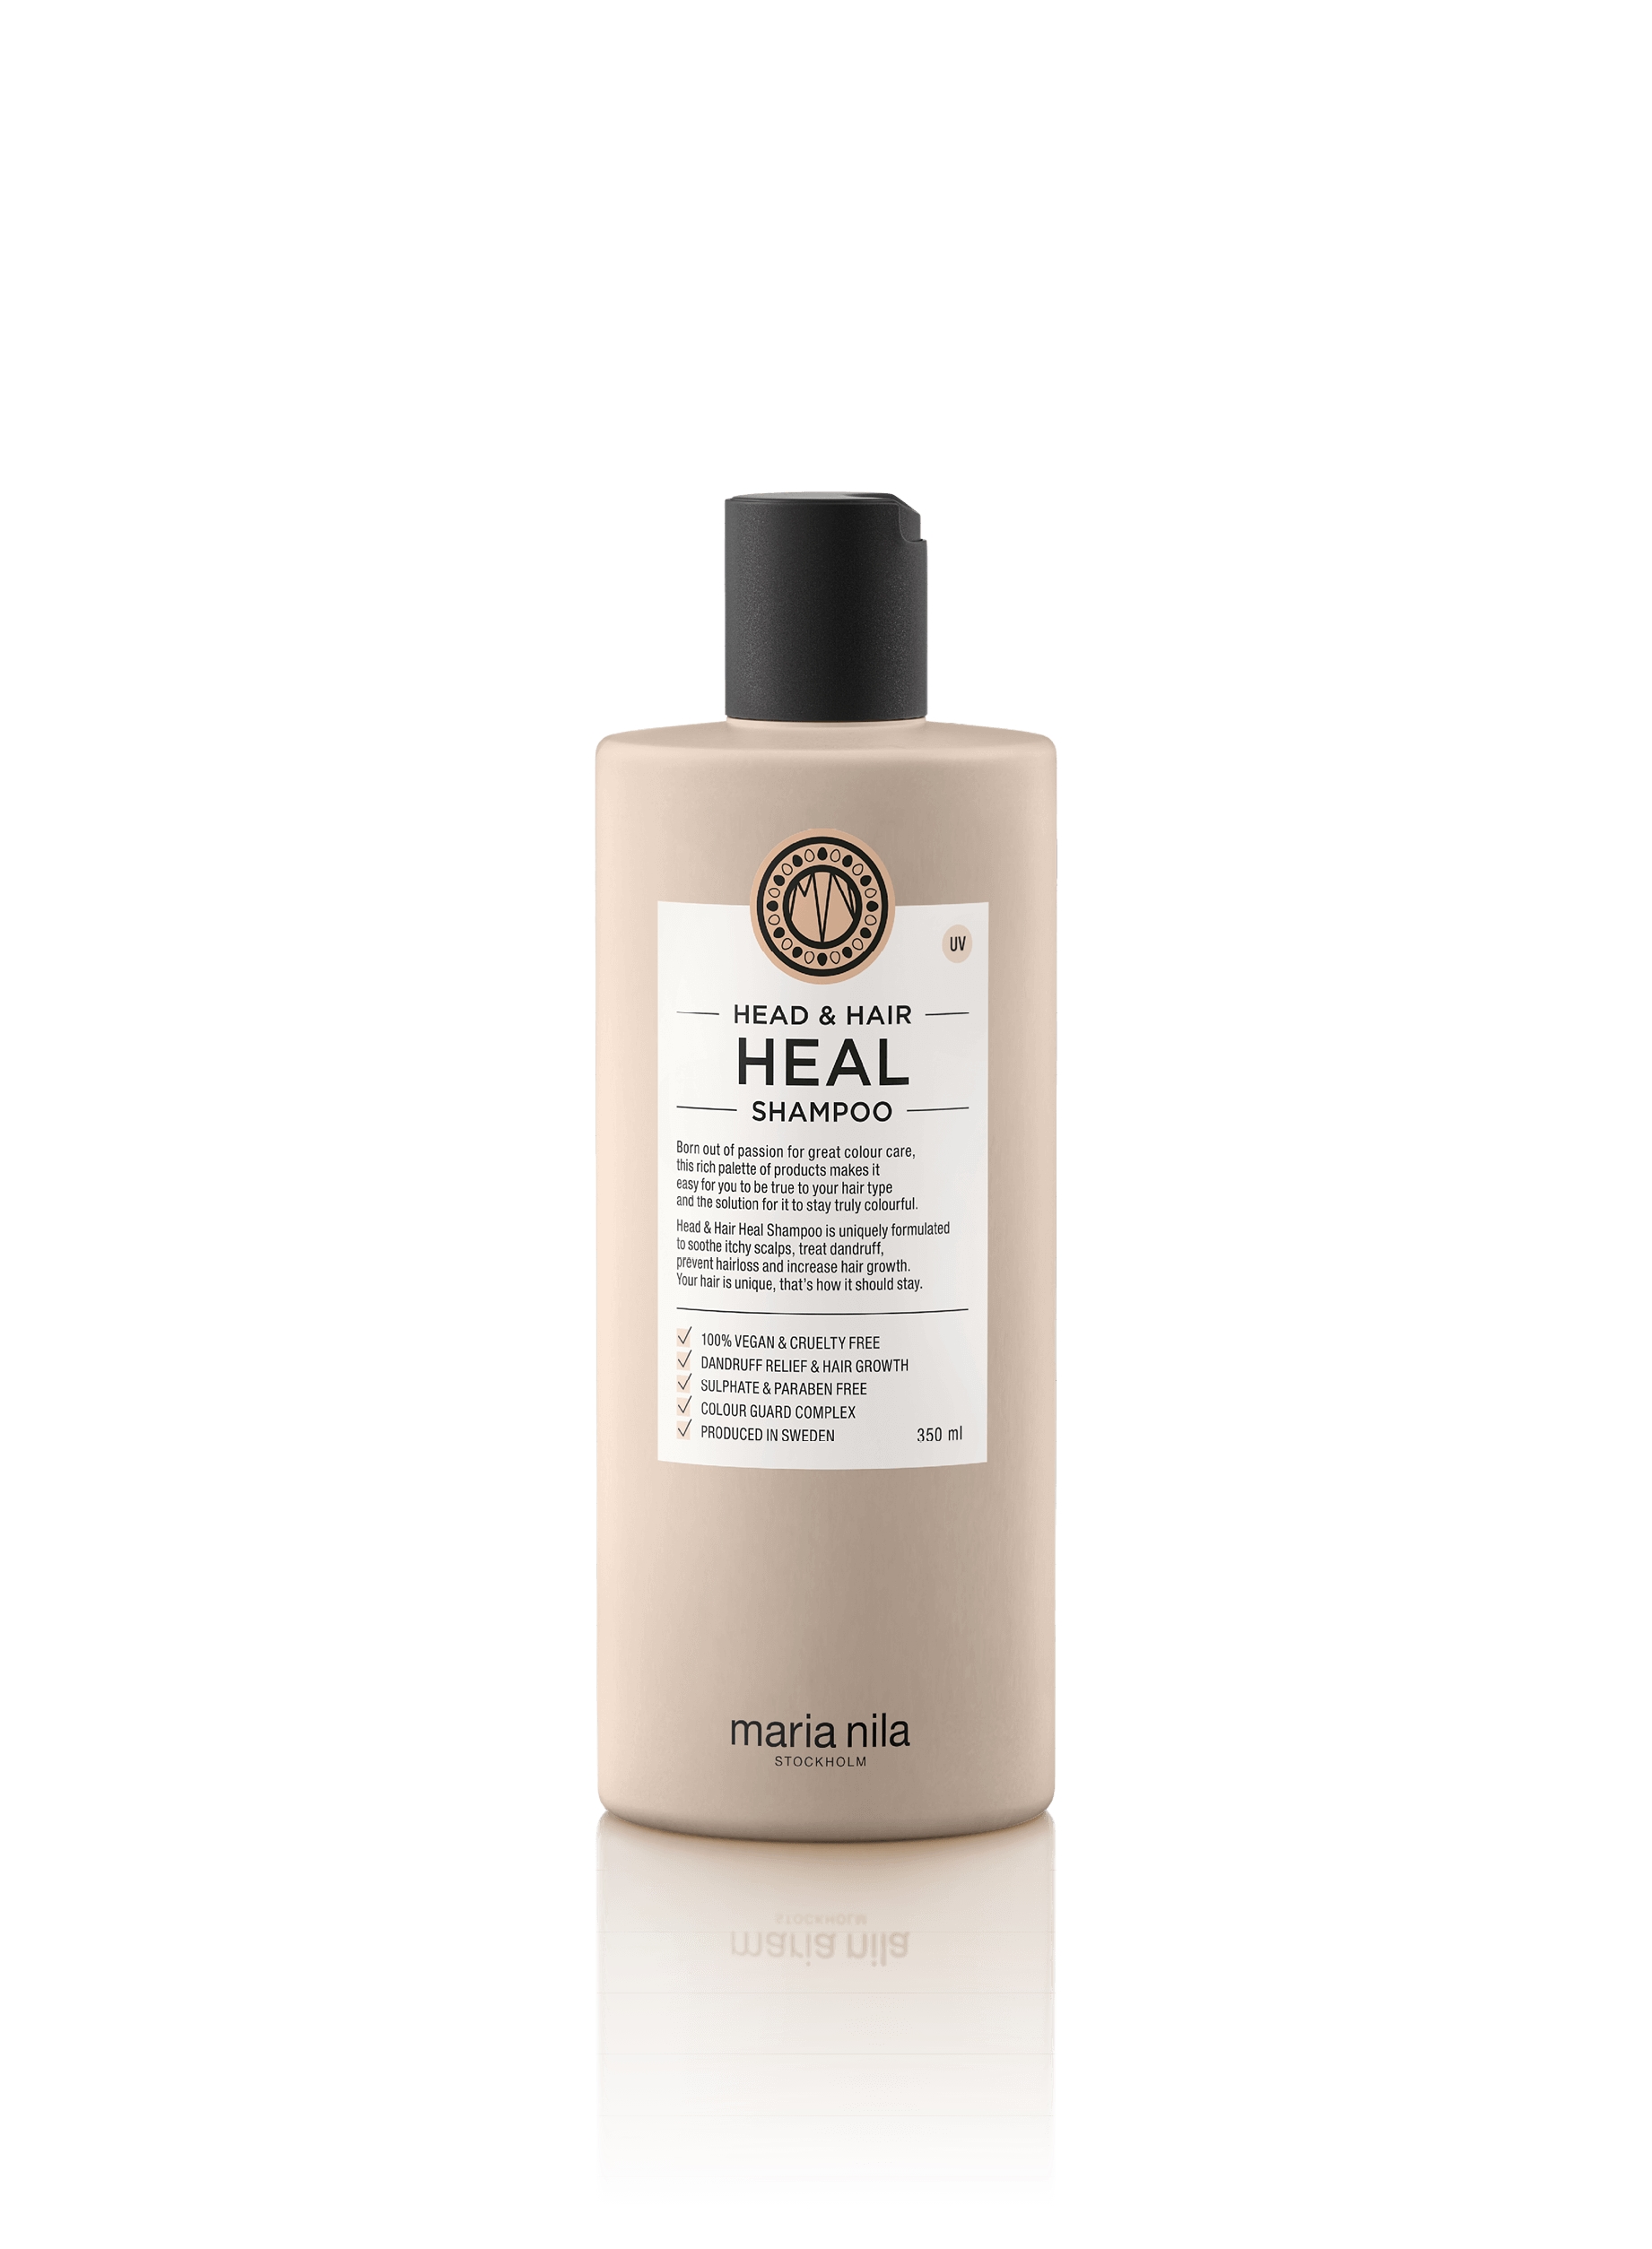  Head & Hair Heal Shampoo